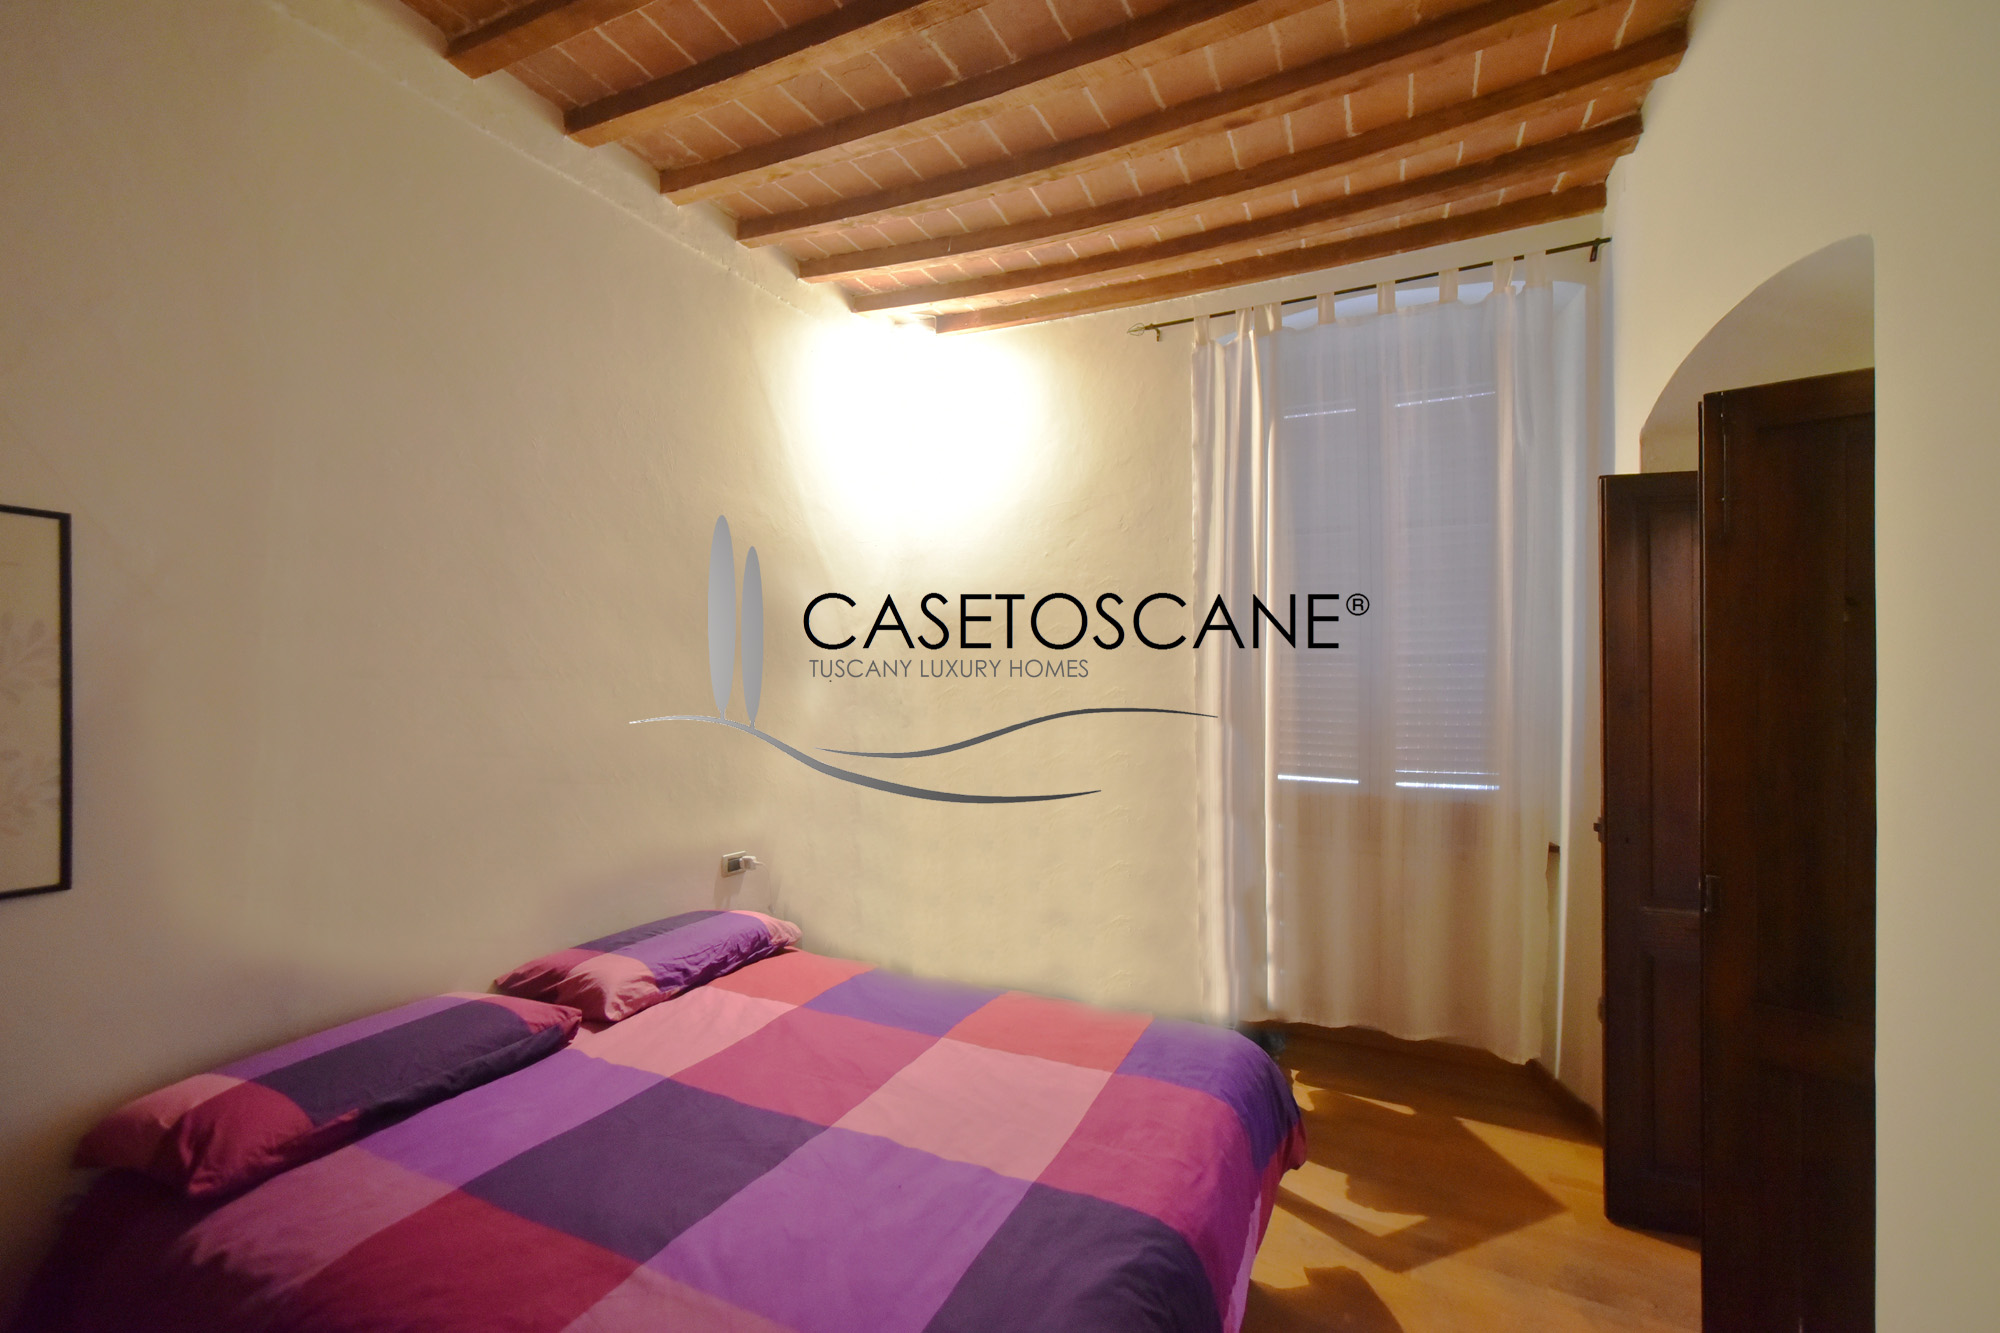 A768 - Caratteristico appartamento di 2,5 vani al primo piano, ristrutturato, in piccola palazzina nel centro storico di Arezzo.